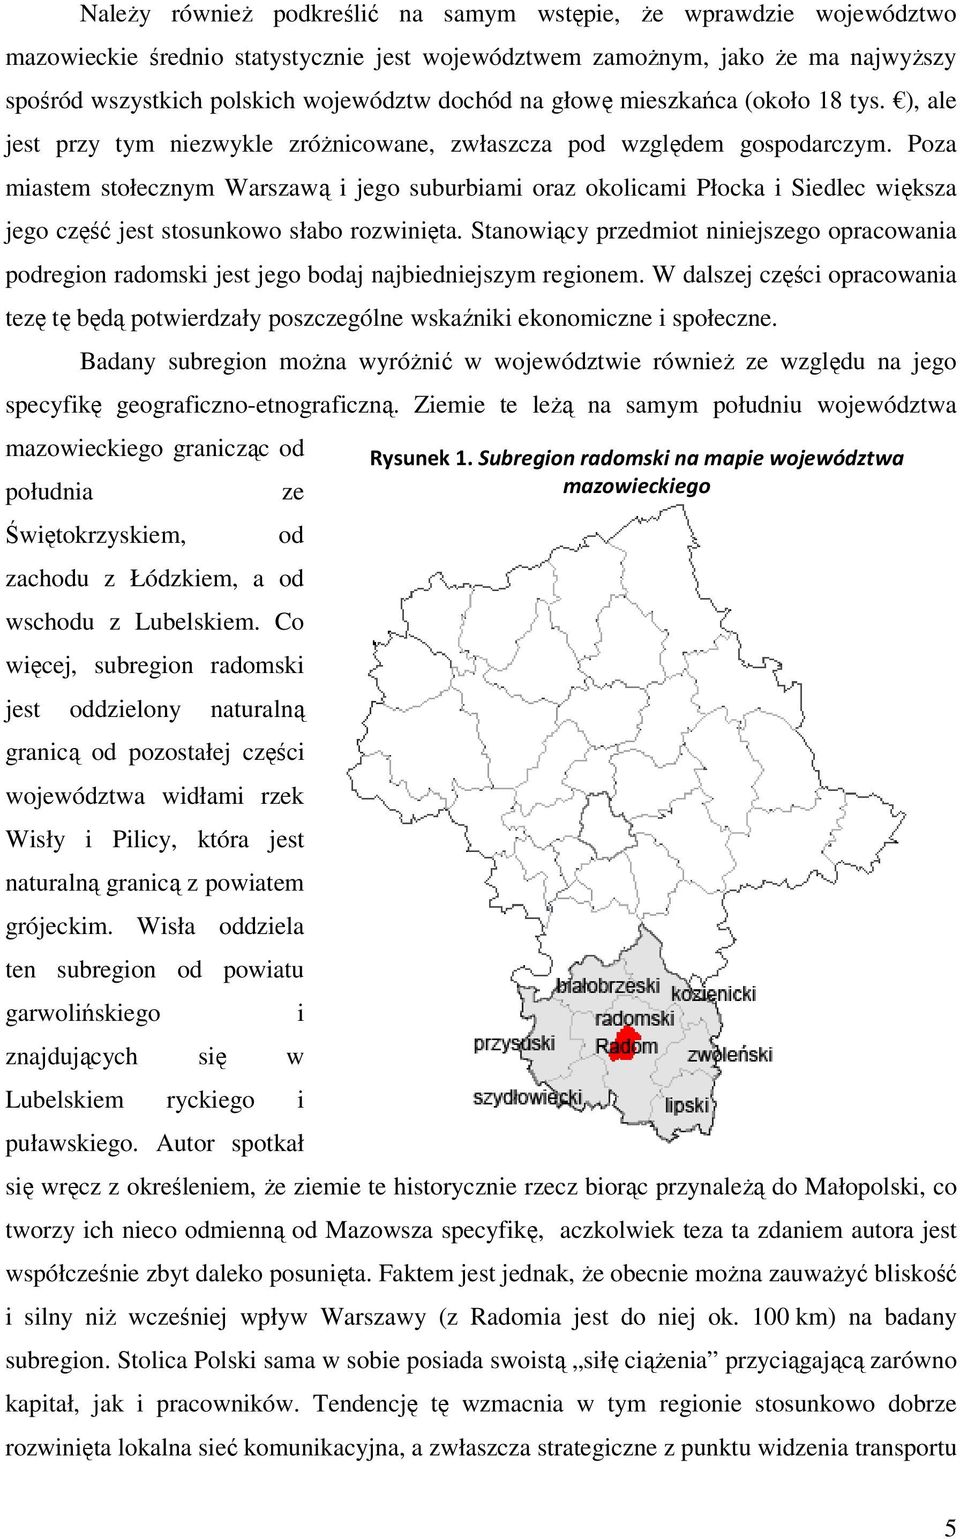 Poza miastem stołecznym Warszawą i jego suburbiami oraz okolicami Płocka i Siedlec większa jego część jest stosunkowo słabo rozwinięta.